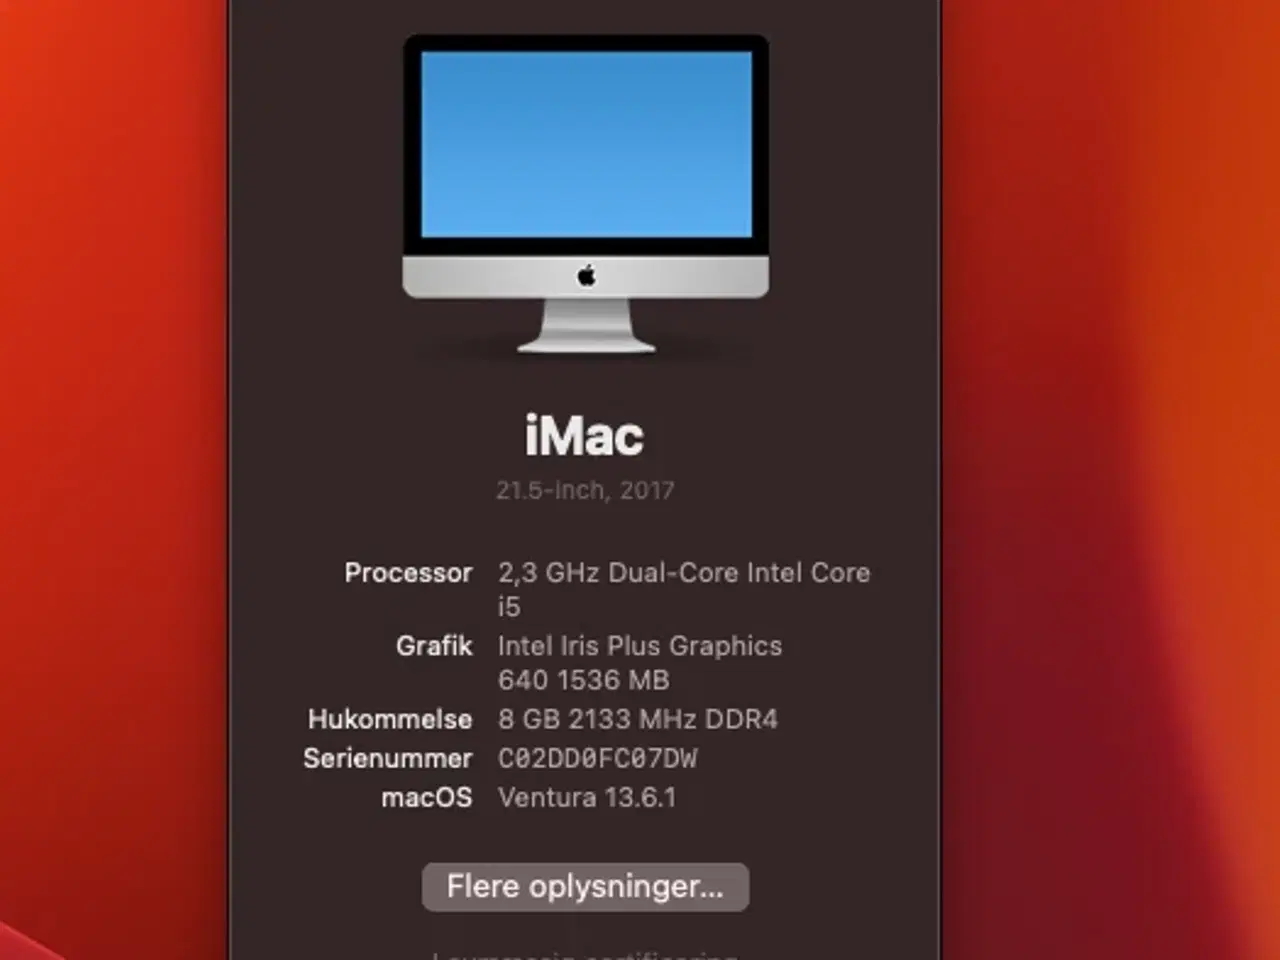 Billede 7 - iMac model MHK03DK/A fra 2020